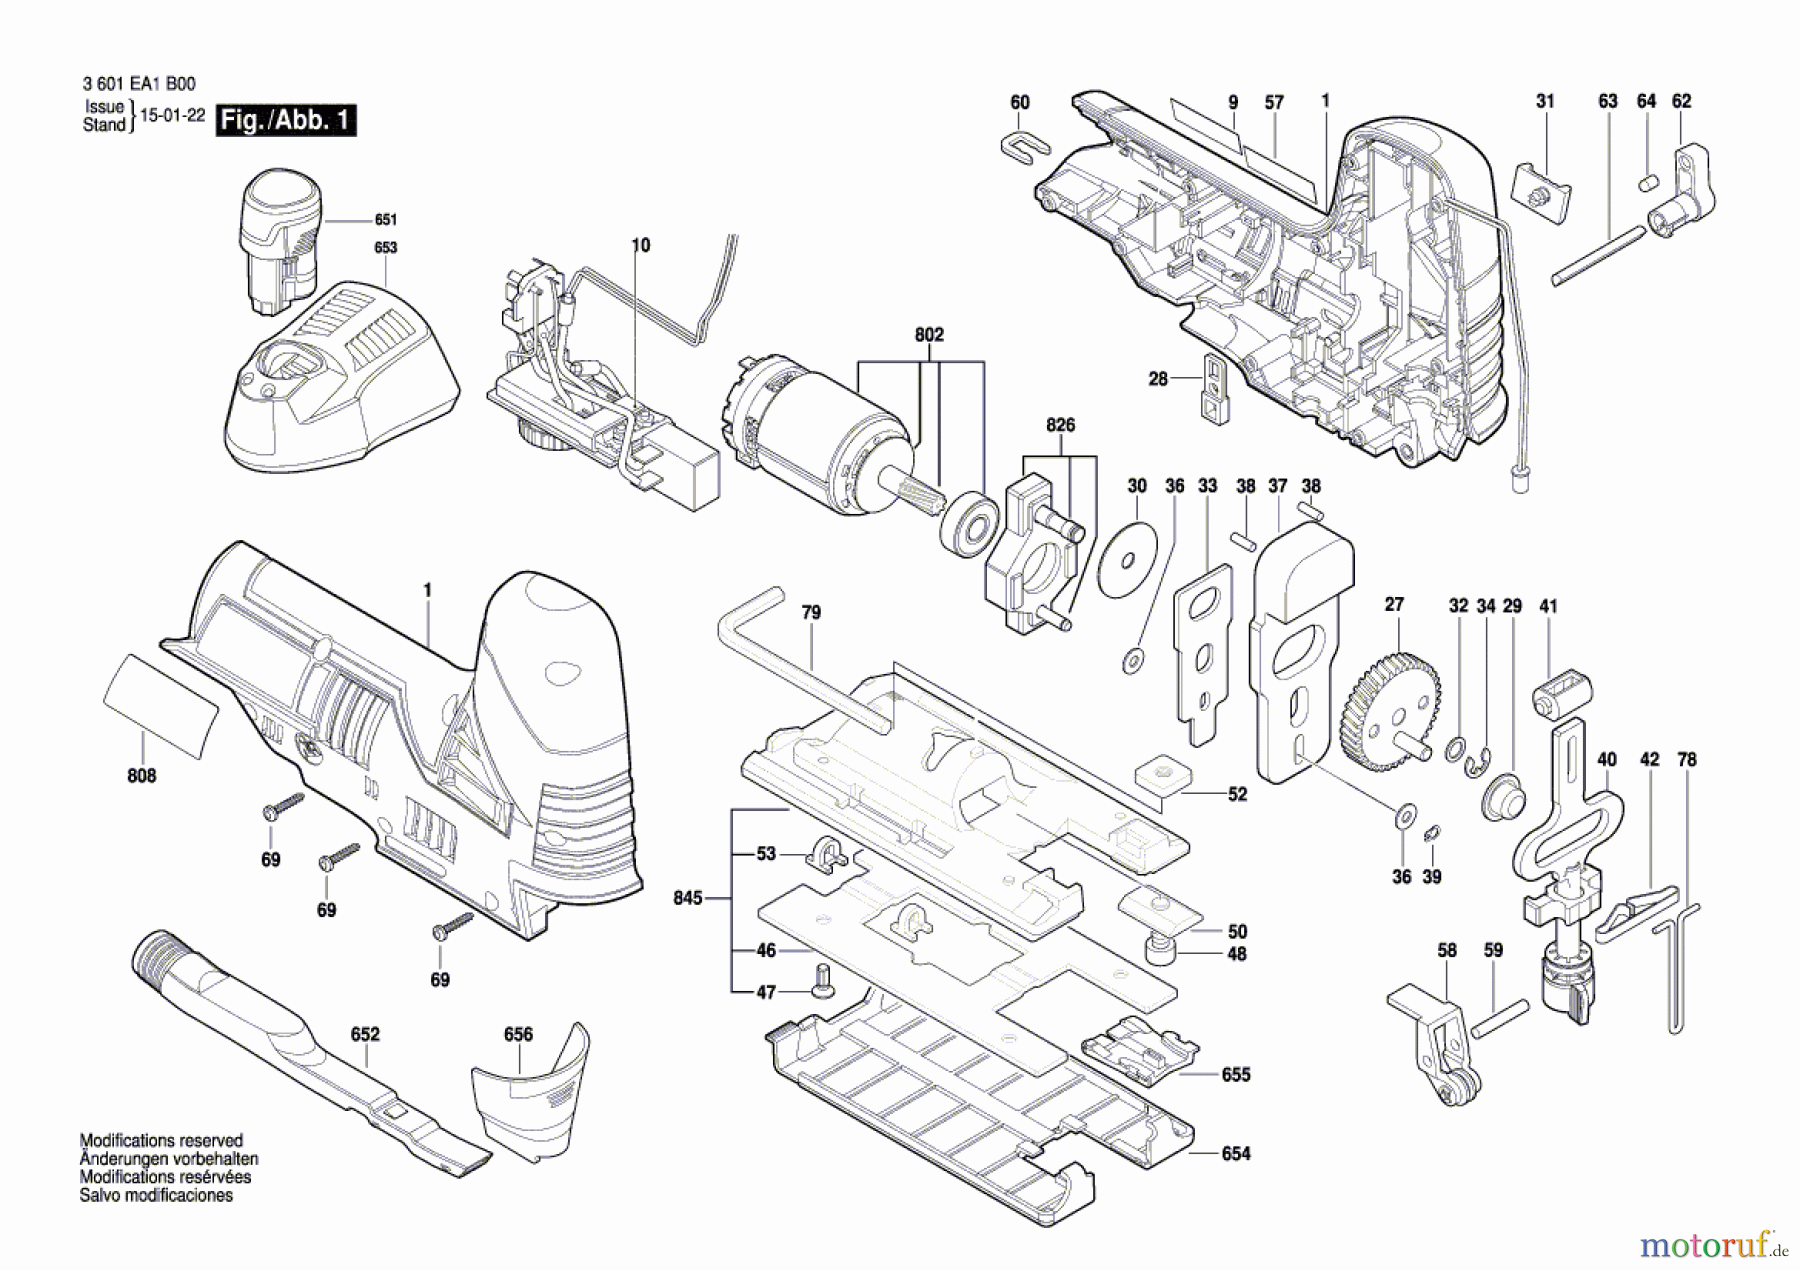  Bosch Akku Werkzeug Akku-Stichsäge A-ST 12 V Seite 1